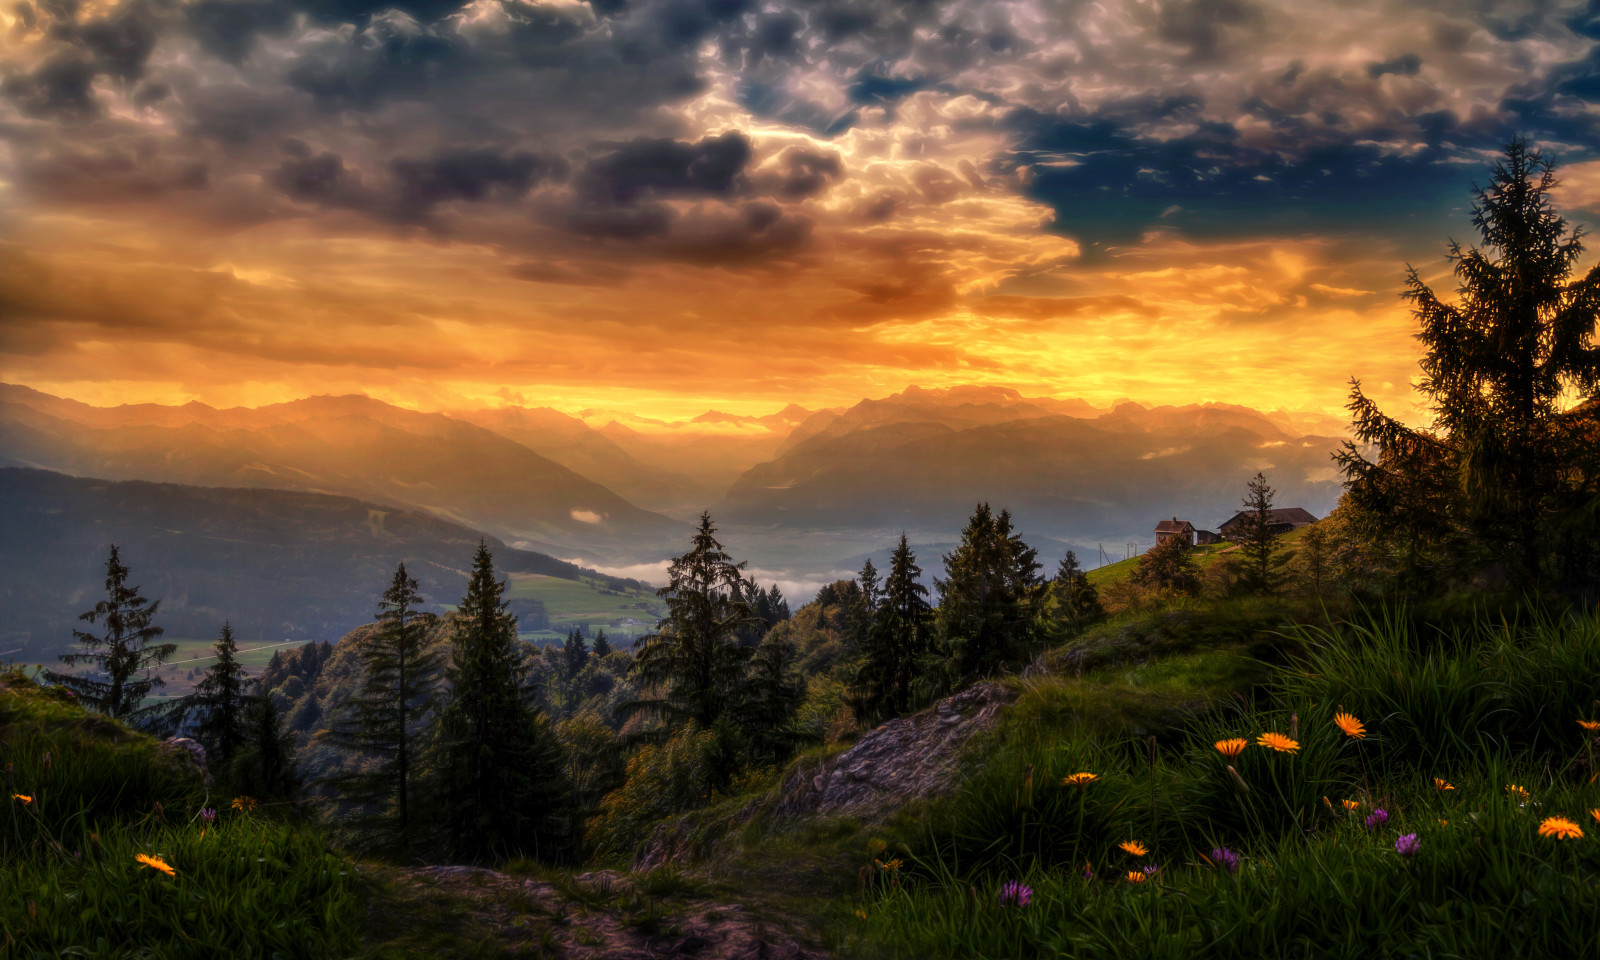 หญ้า, ท้องฟ้า, ประเทศสวิสเซอร์แลนด์, พระอาทิตย์ตกดิน, ต้นไม้, ดอกไม้, เมฆ, ภูเขา